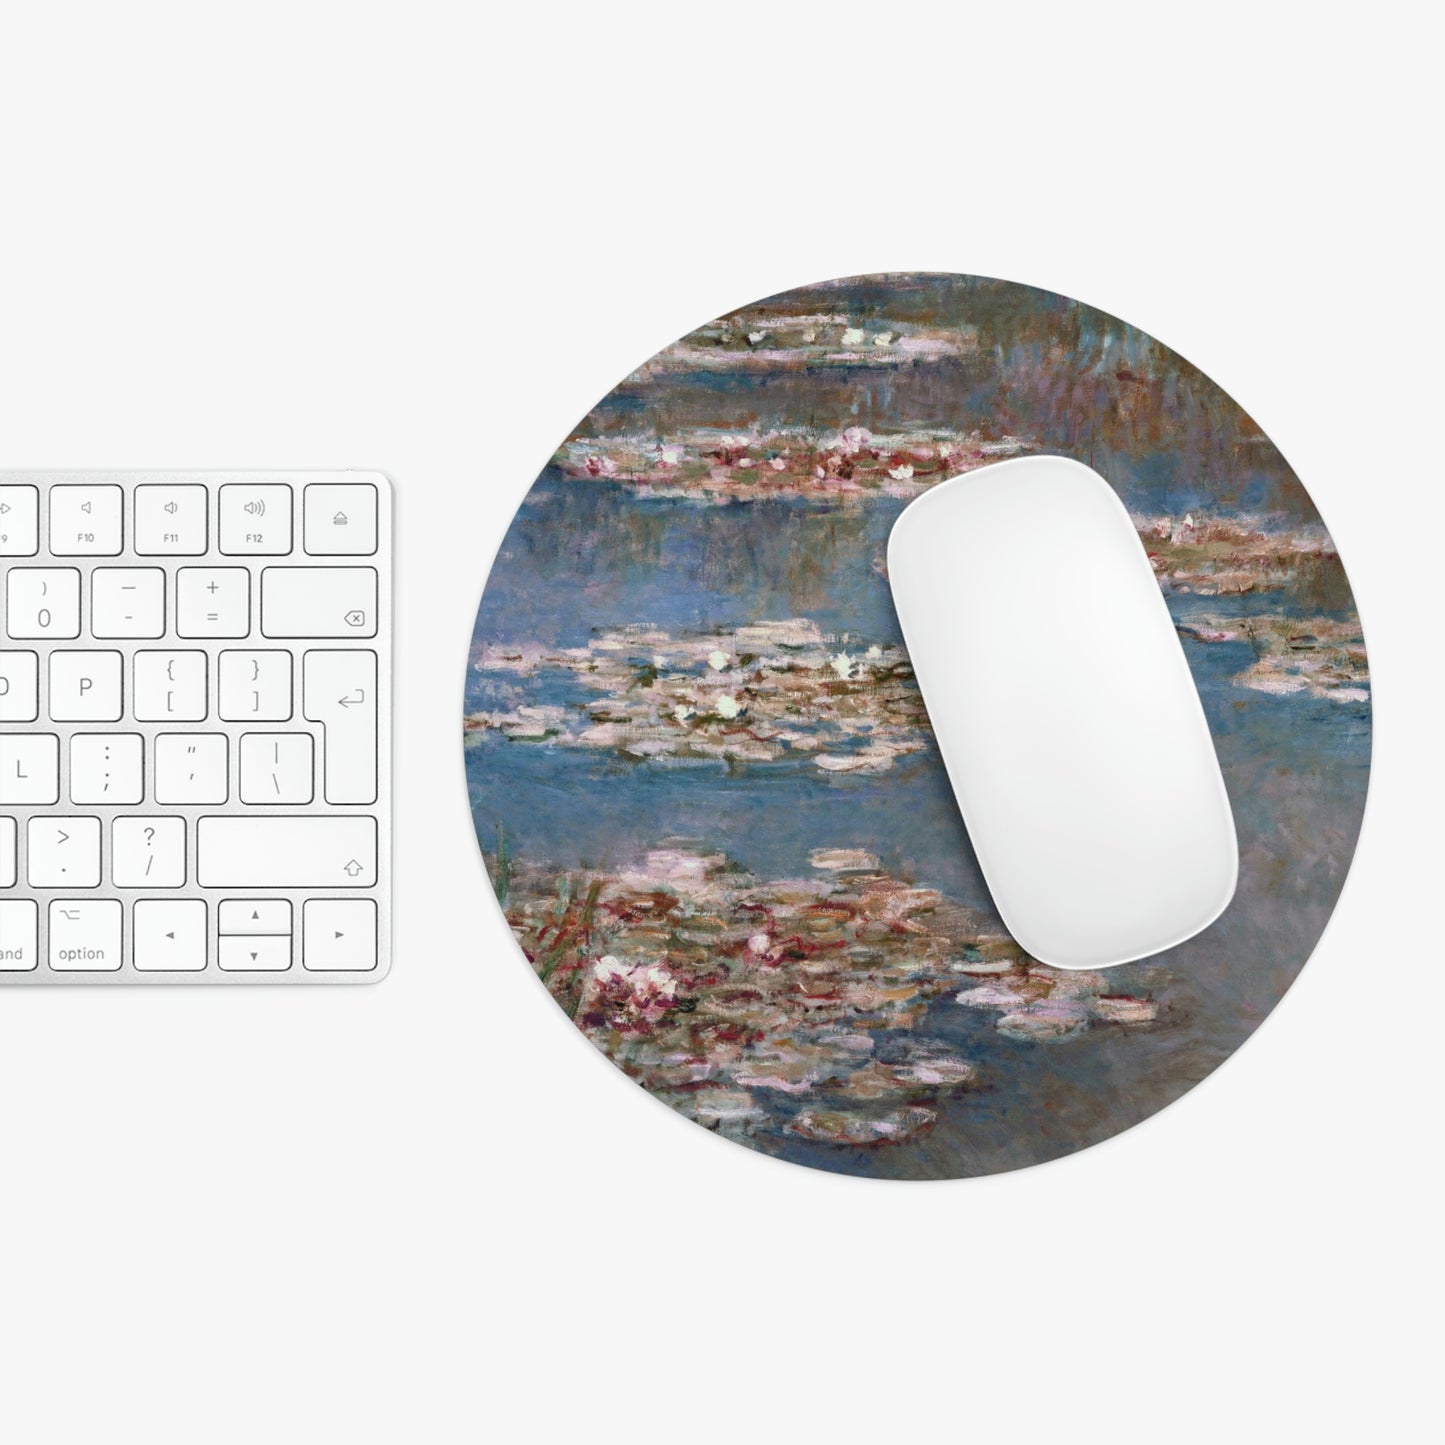 Claude Monet: "Nympheas" – Mouse Pad